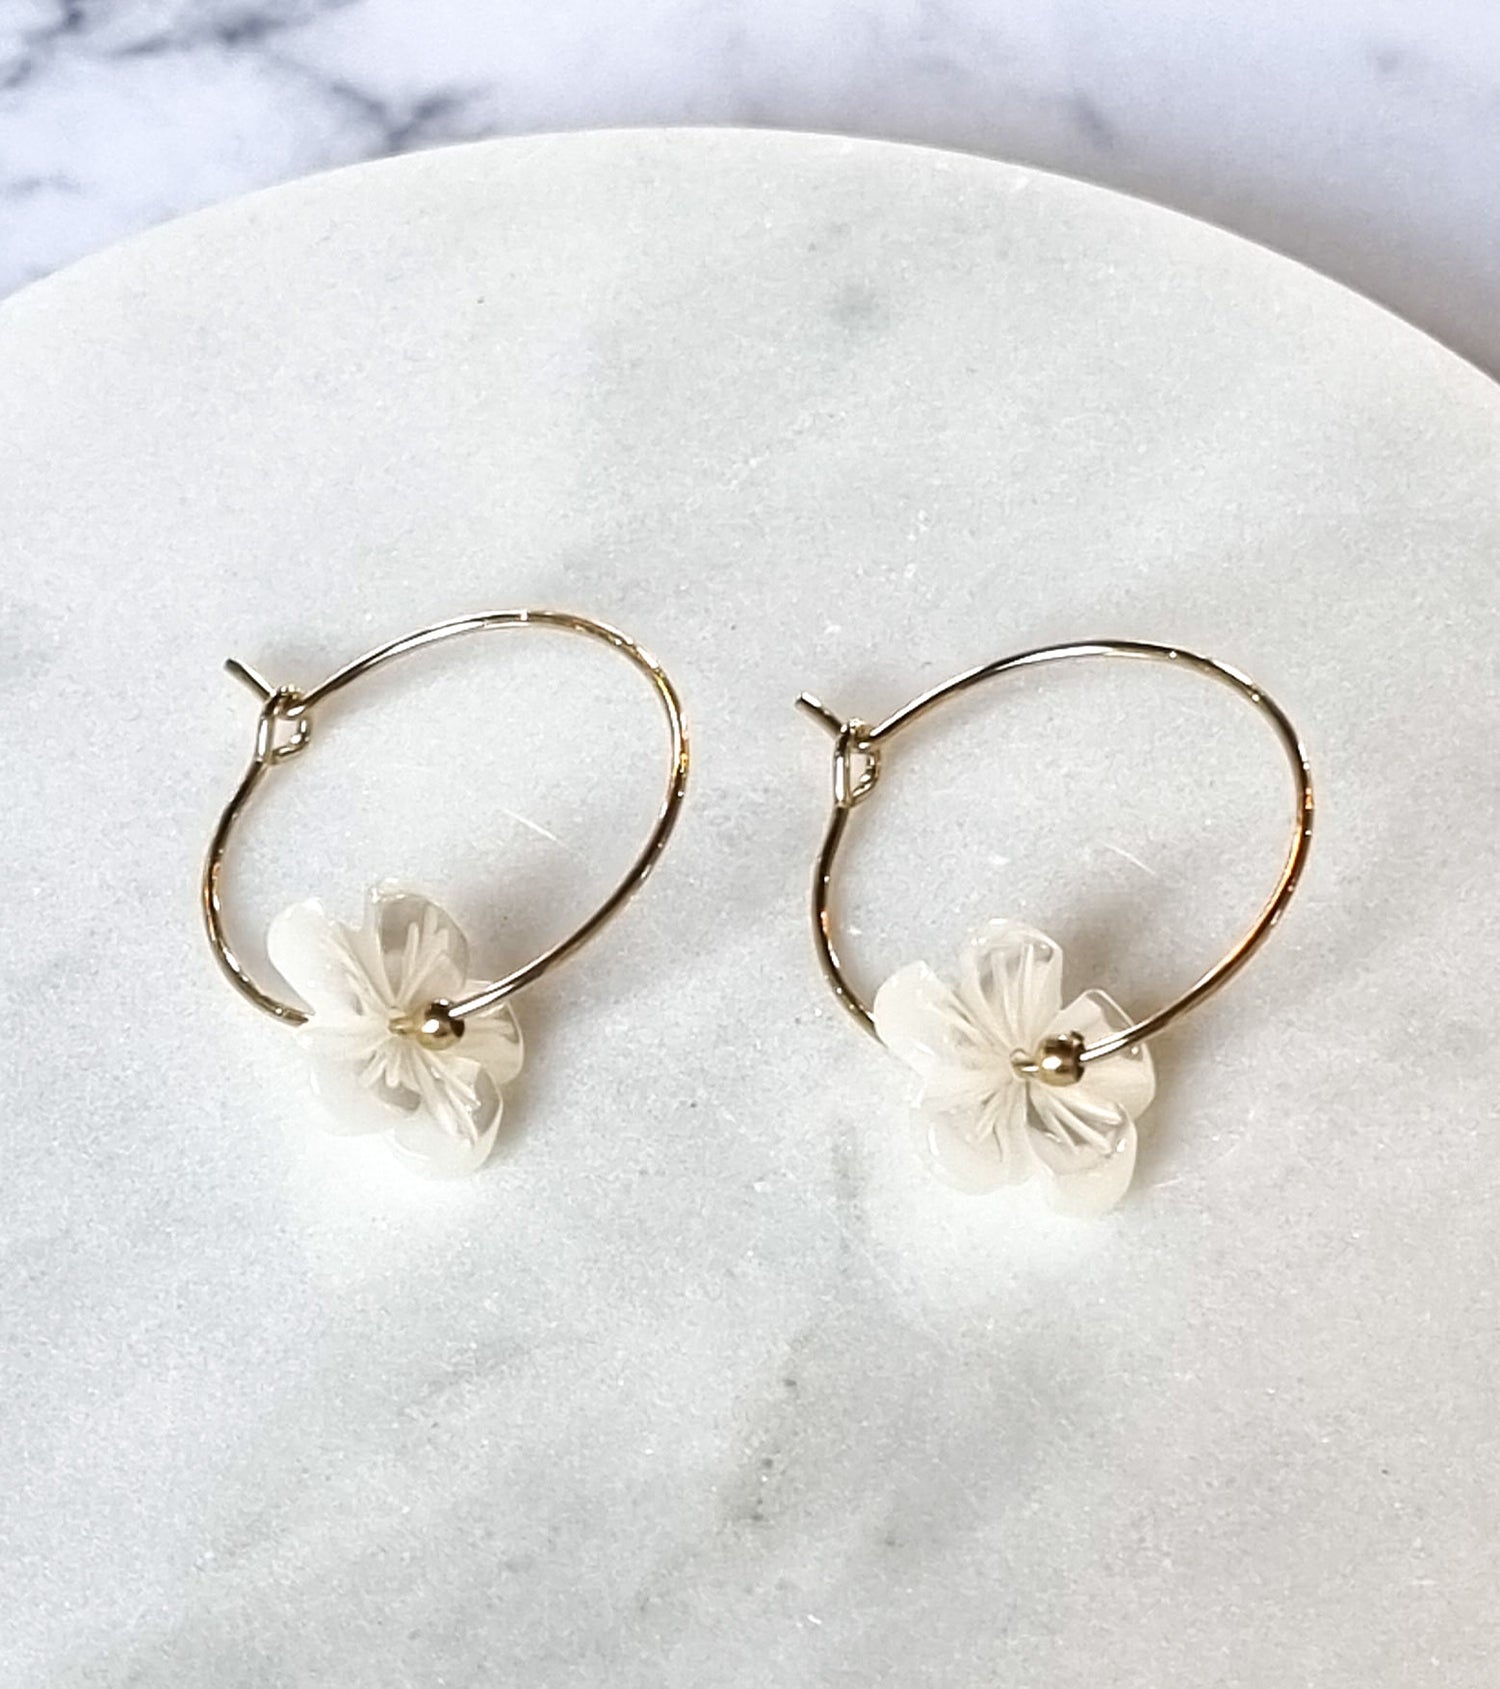 London Chic Earrings - Mother of Pearl Flower Hoop